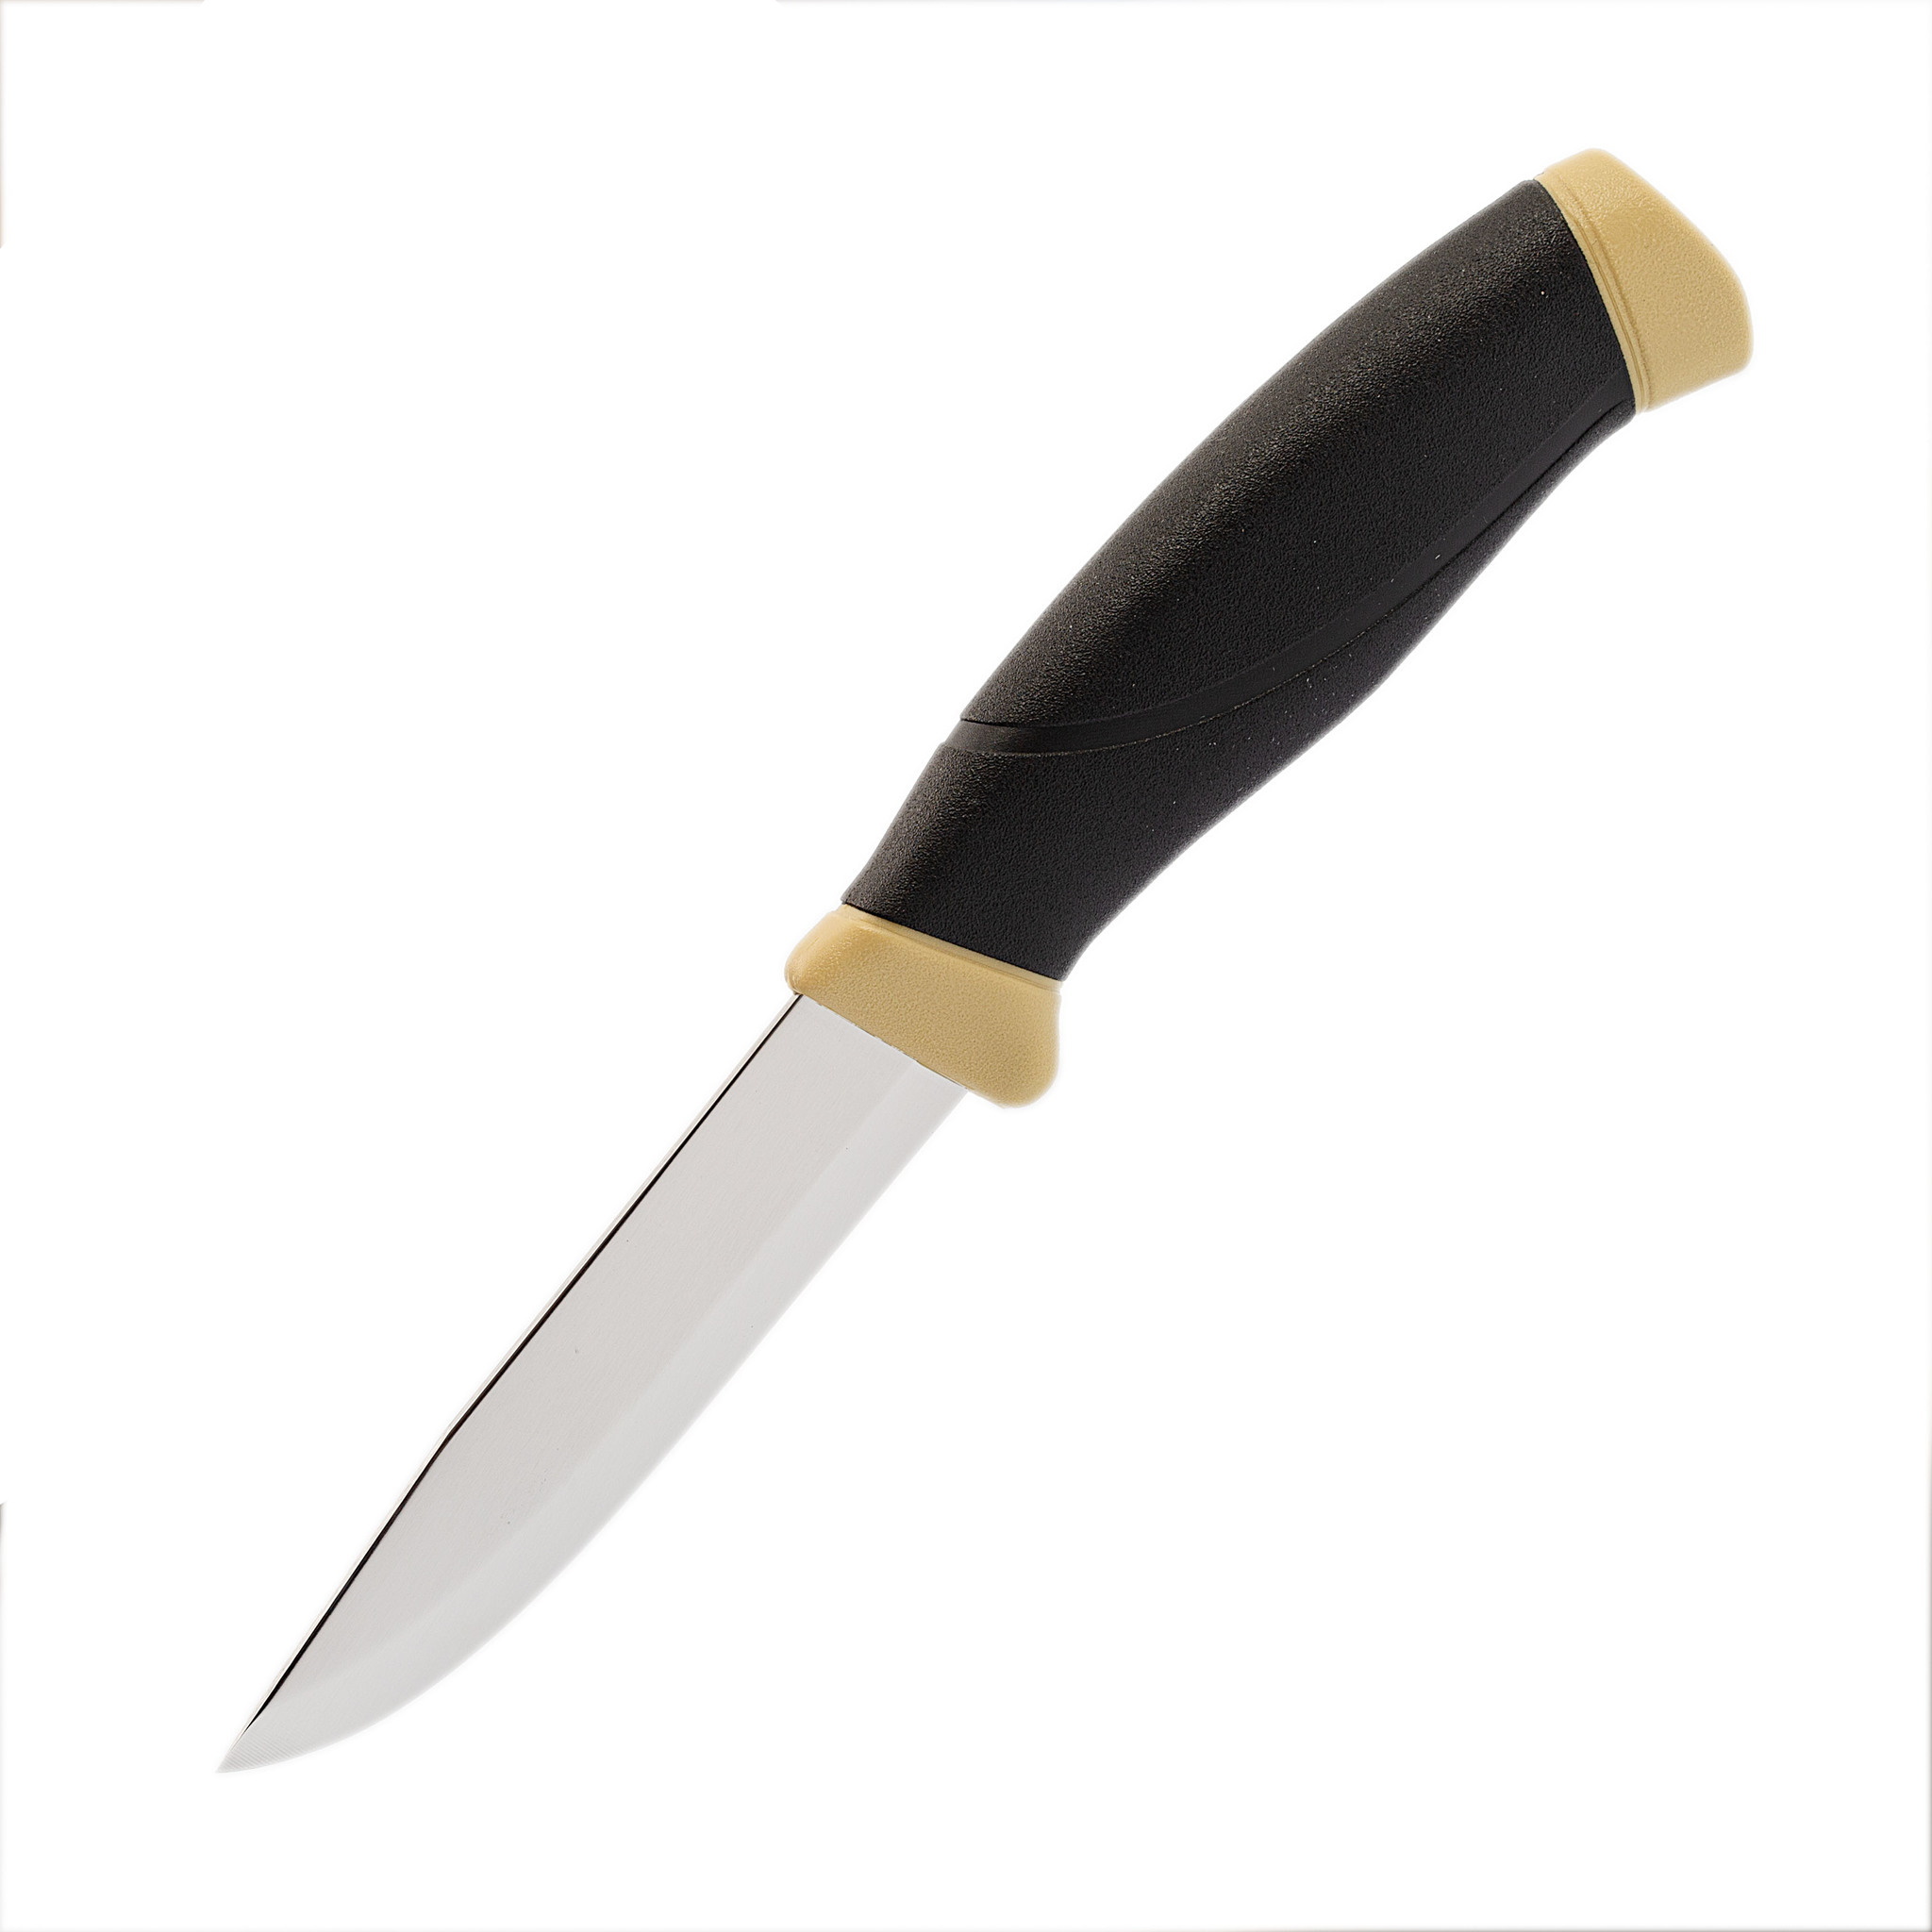 Нож с фиксированным лезвием Morakniv Companion Desert, сталь Sandvik 12С27, рукоять резина/пластик - фото 1